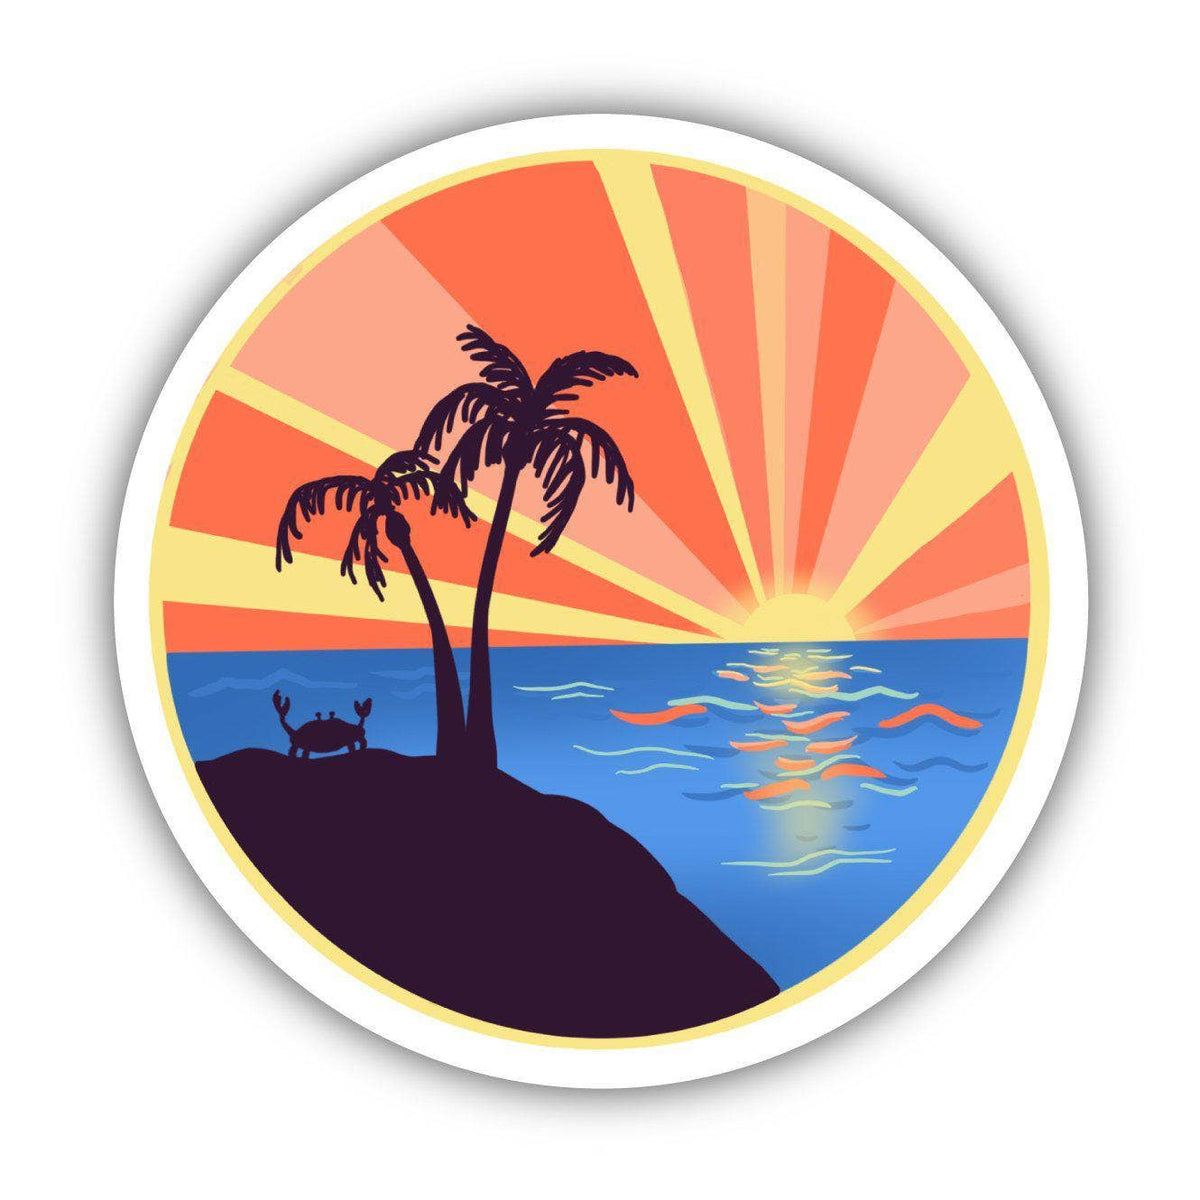 Ocean Sunset Sticker